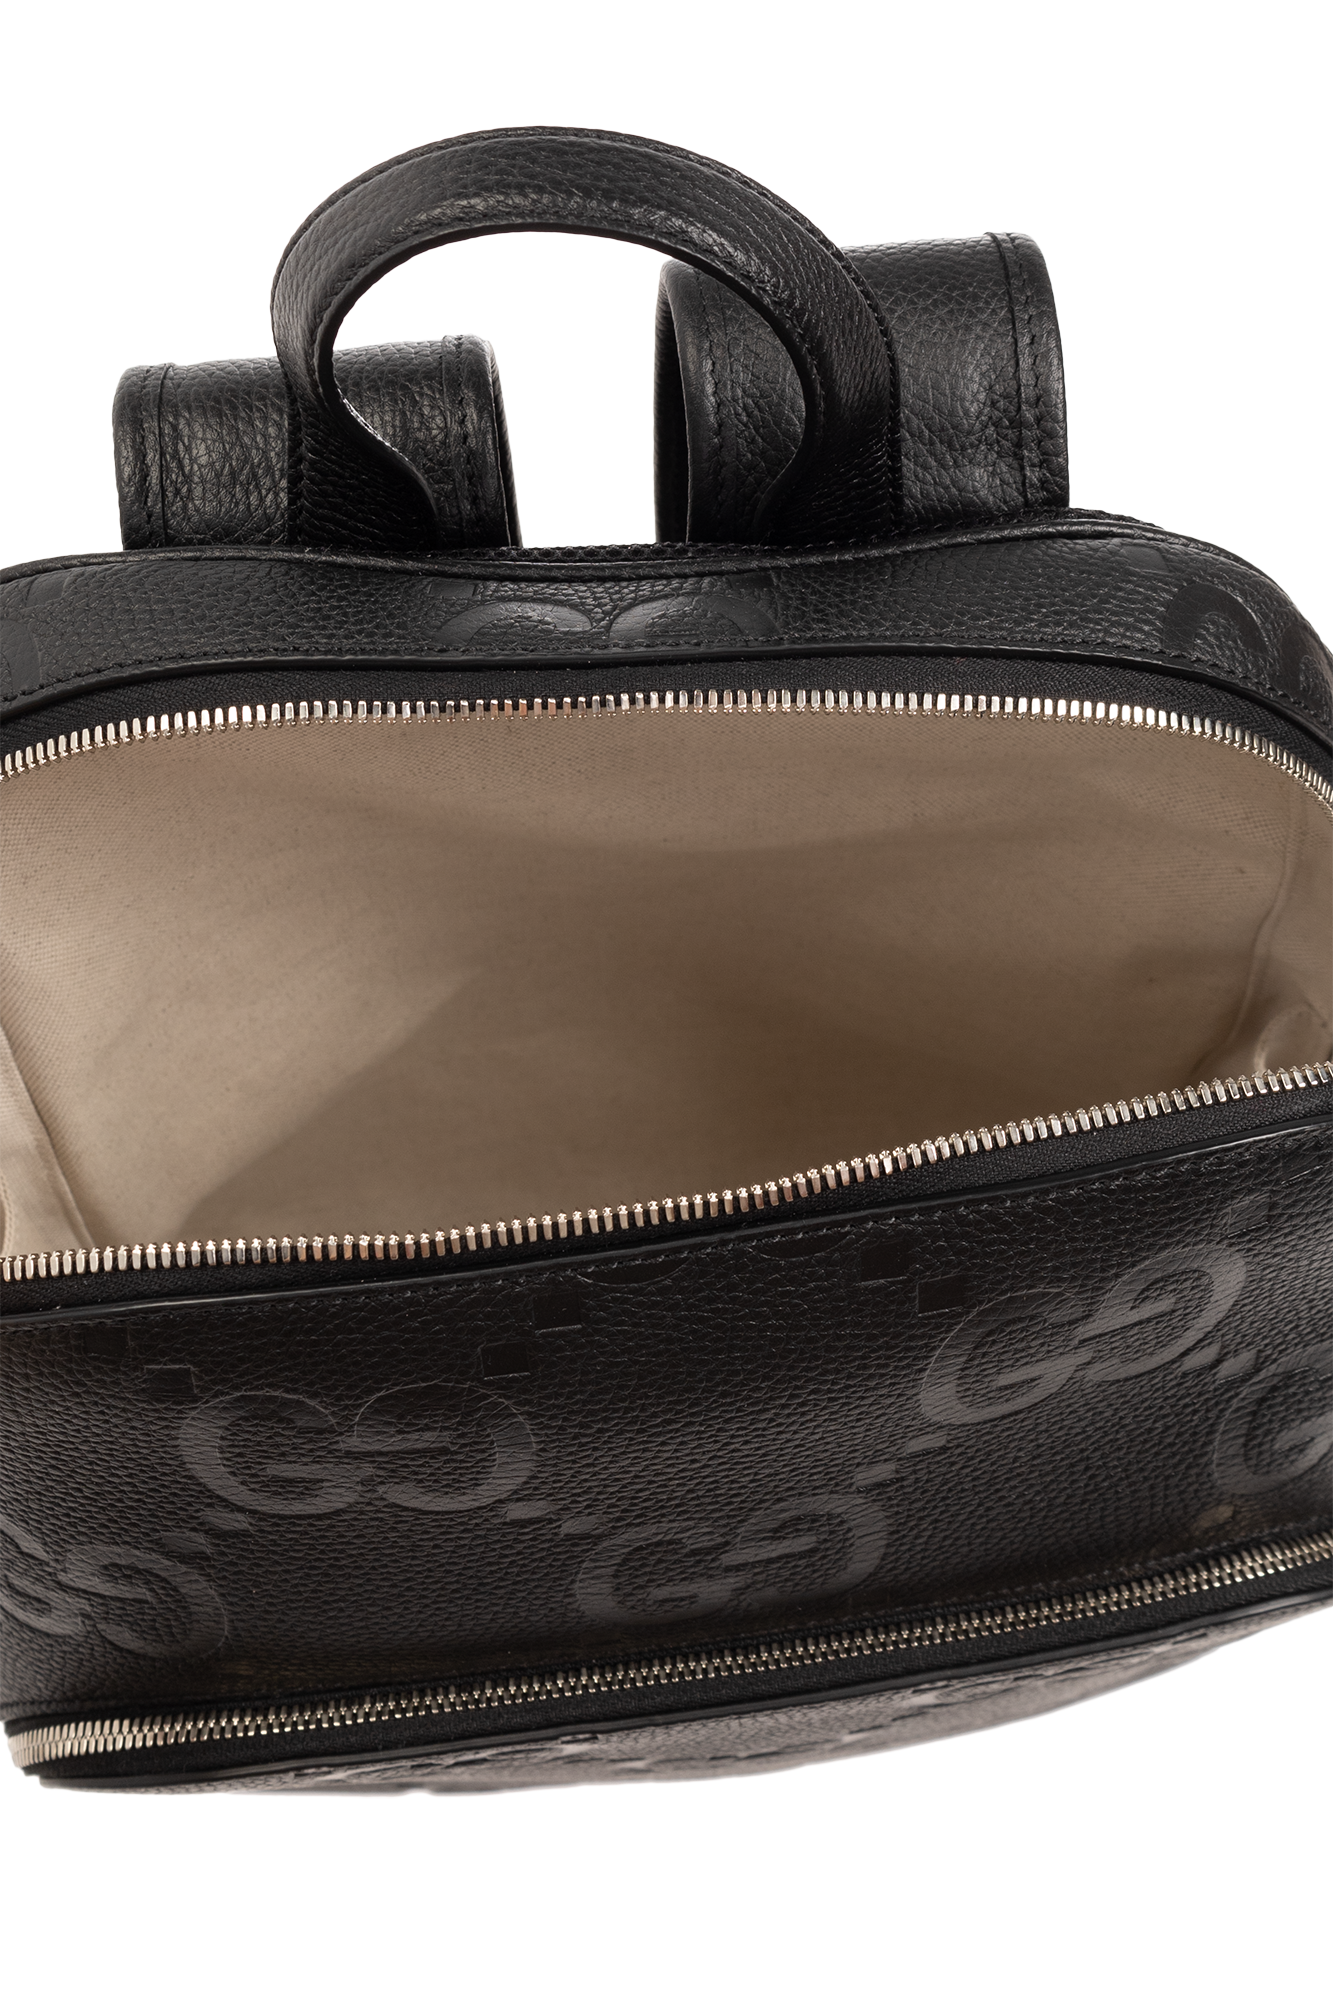 gucci design Monogrammed backpack